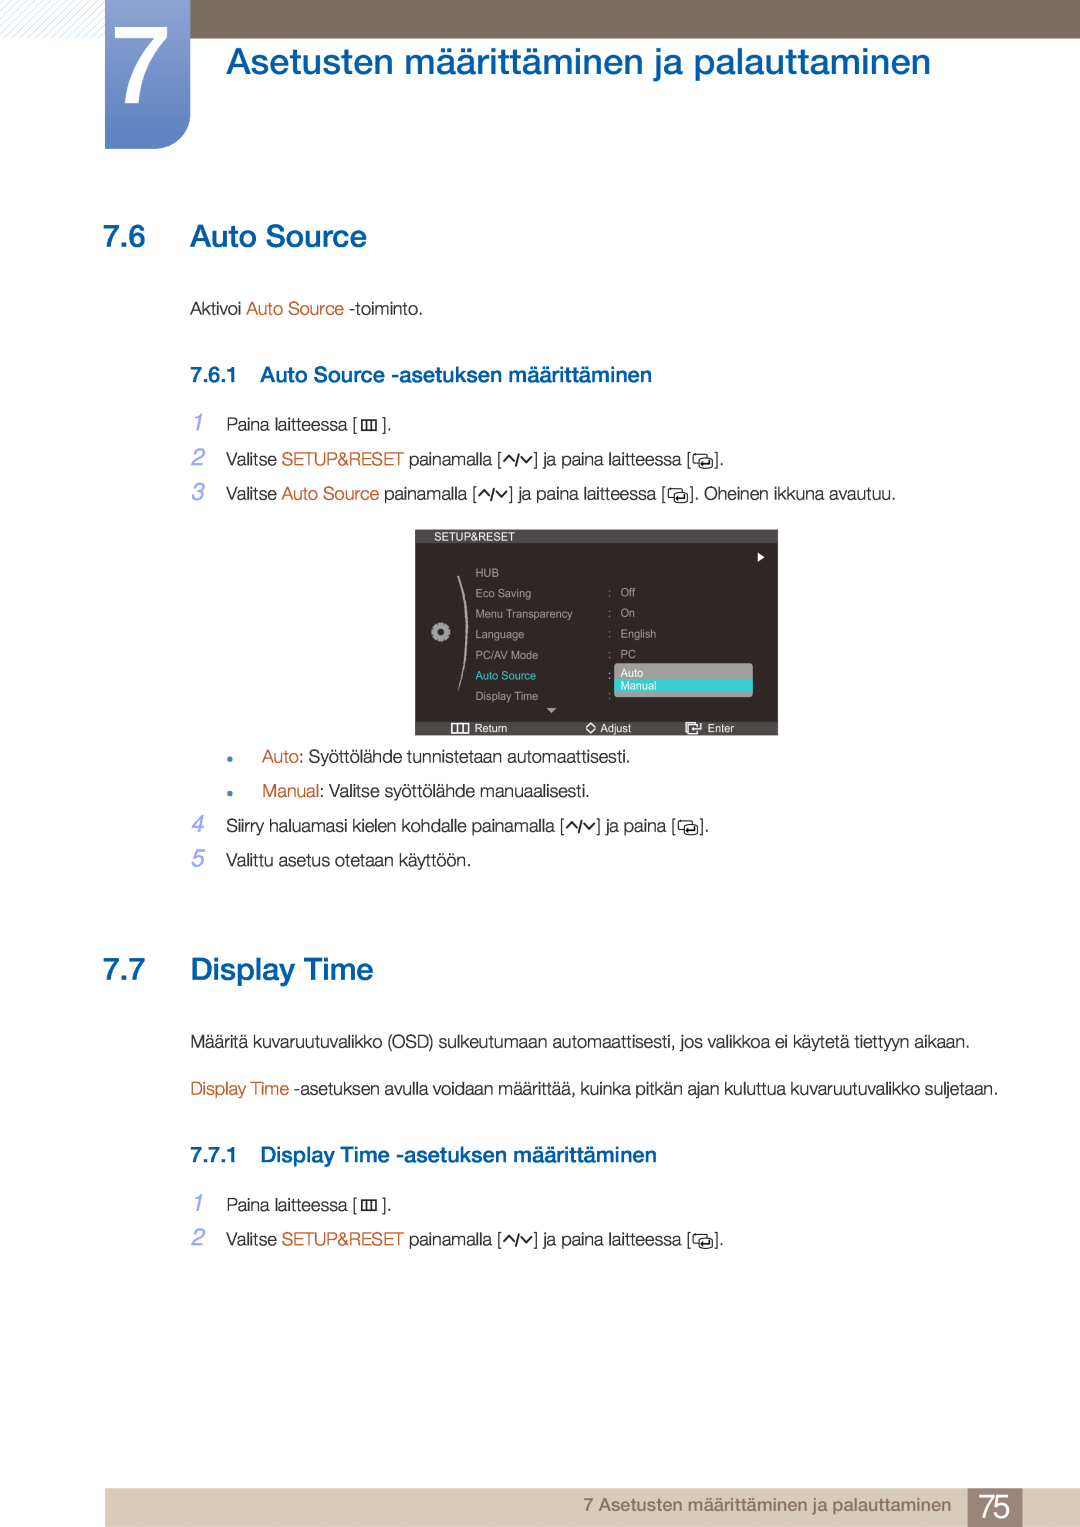 Samsung LC27A750XS/EN, LC23A750XS/EN Auto Source -asetuksen määrittäminen, Display Time -asetuksen määrittäminen 